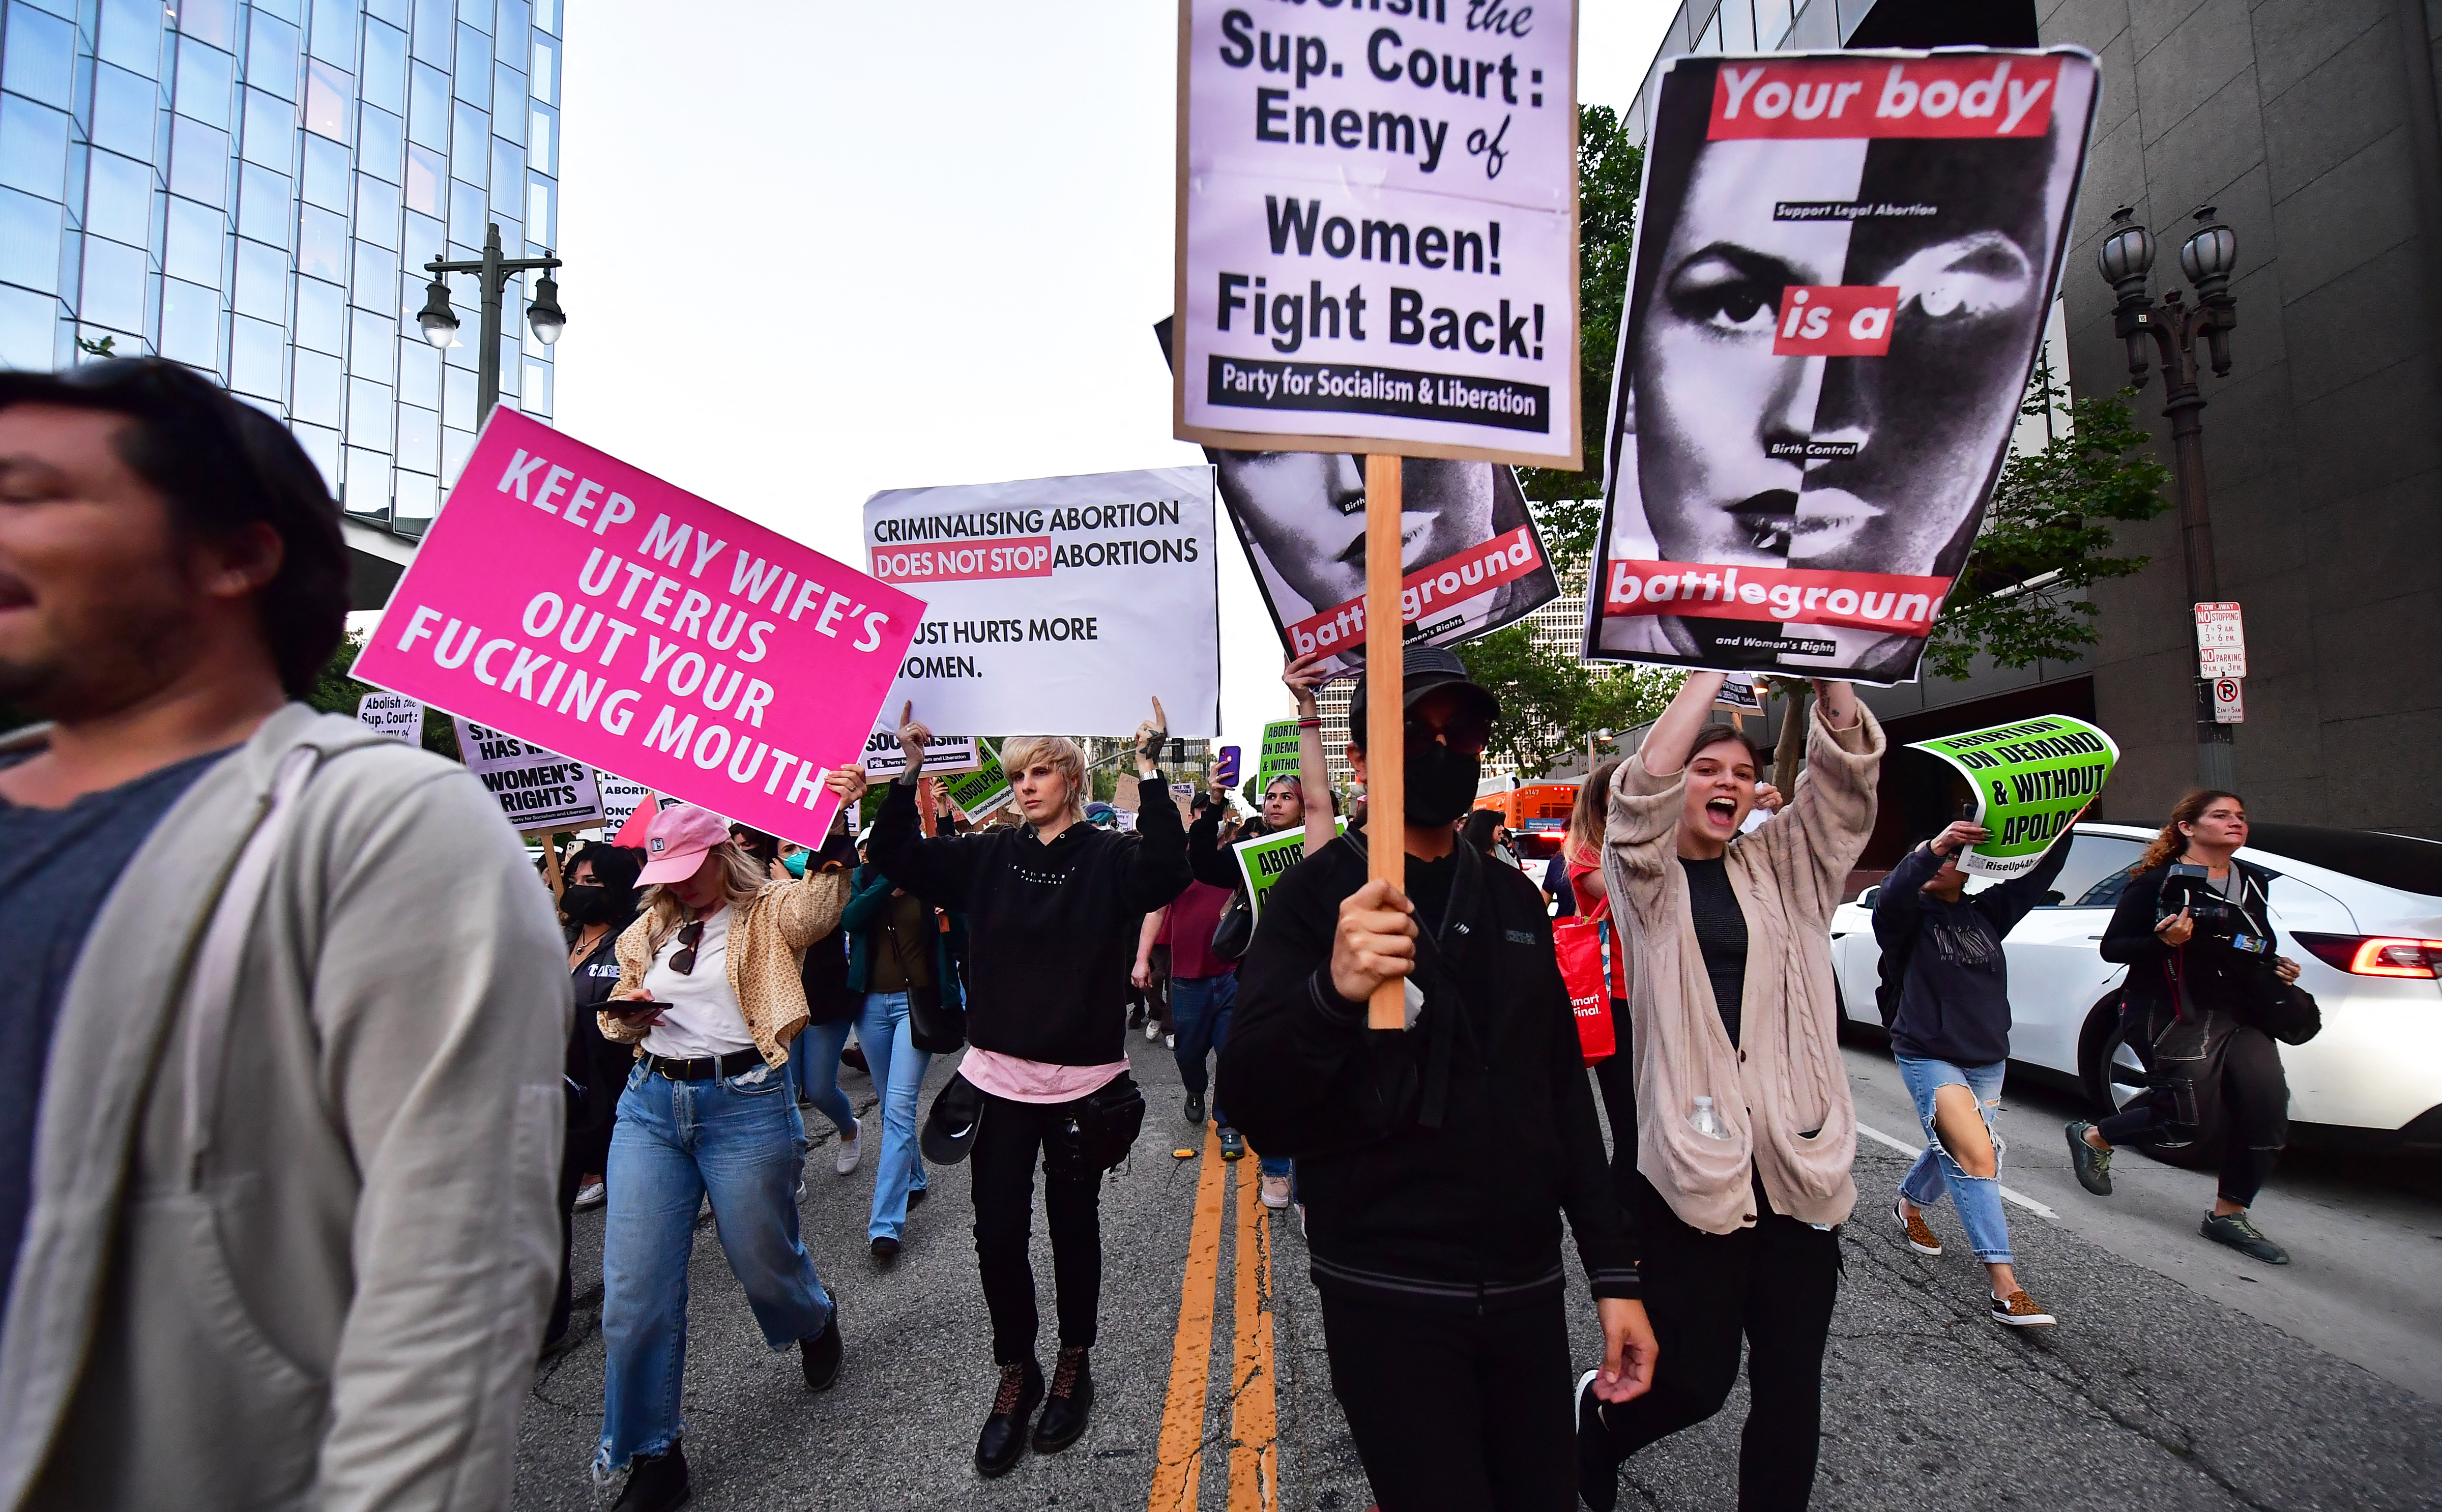 Az amerikai Legfelsőbb Bíróság megerősítette, hogy valódi az abortuszdöntés felülvizsgálatáról szóló tervezet